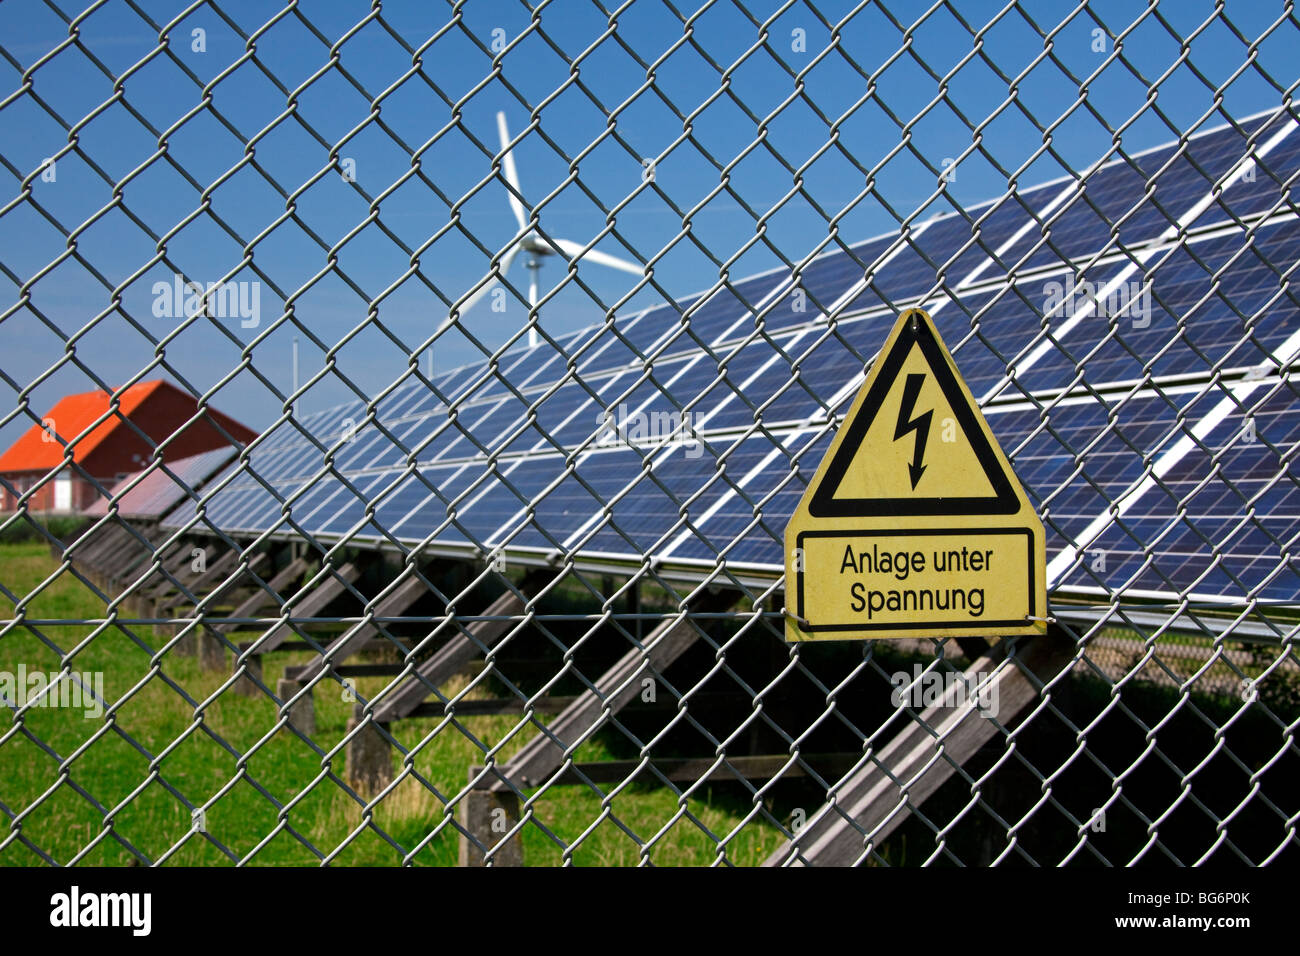 Le signe de danger et de panneaux solaires photovoltaïques pour la production d'électricité, de l'Allemagne Banque D'Images